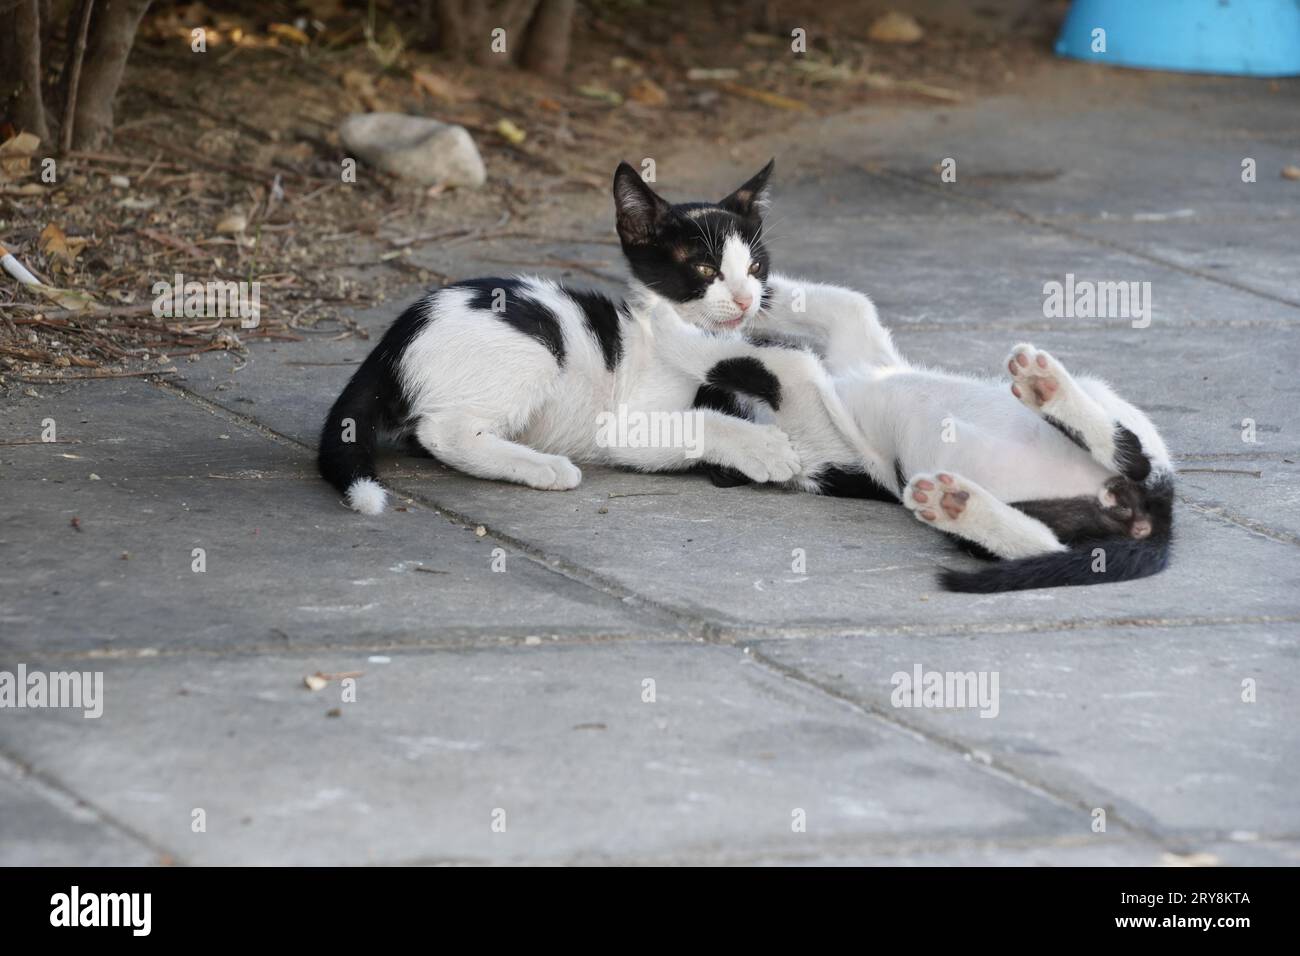 Zwei schwarz-weiße Kätzchen spielen auf dem Bürgersteig. Einer von ihnen ist auf dem Bauch gestreckt, der andere auf dem Rücken. Stockfoto